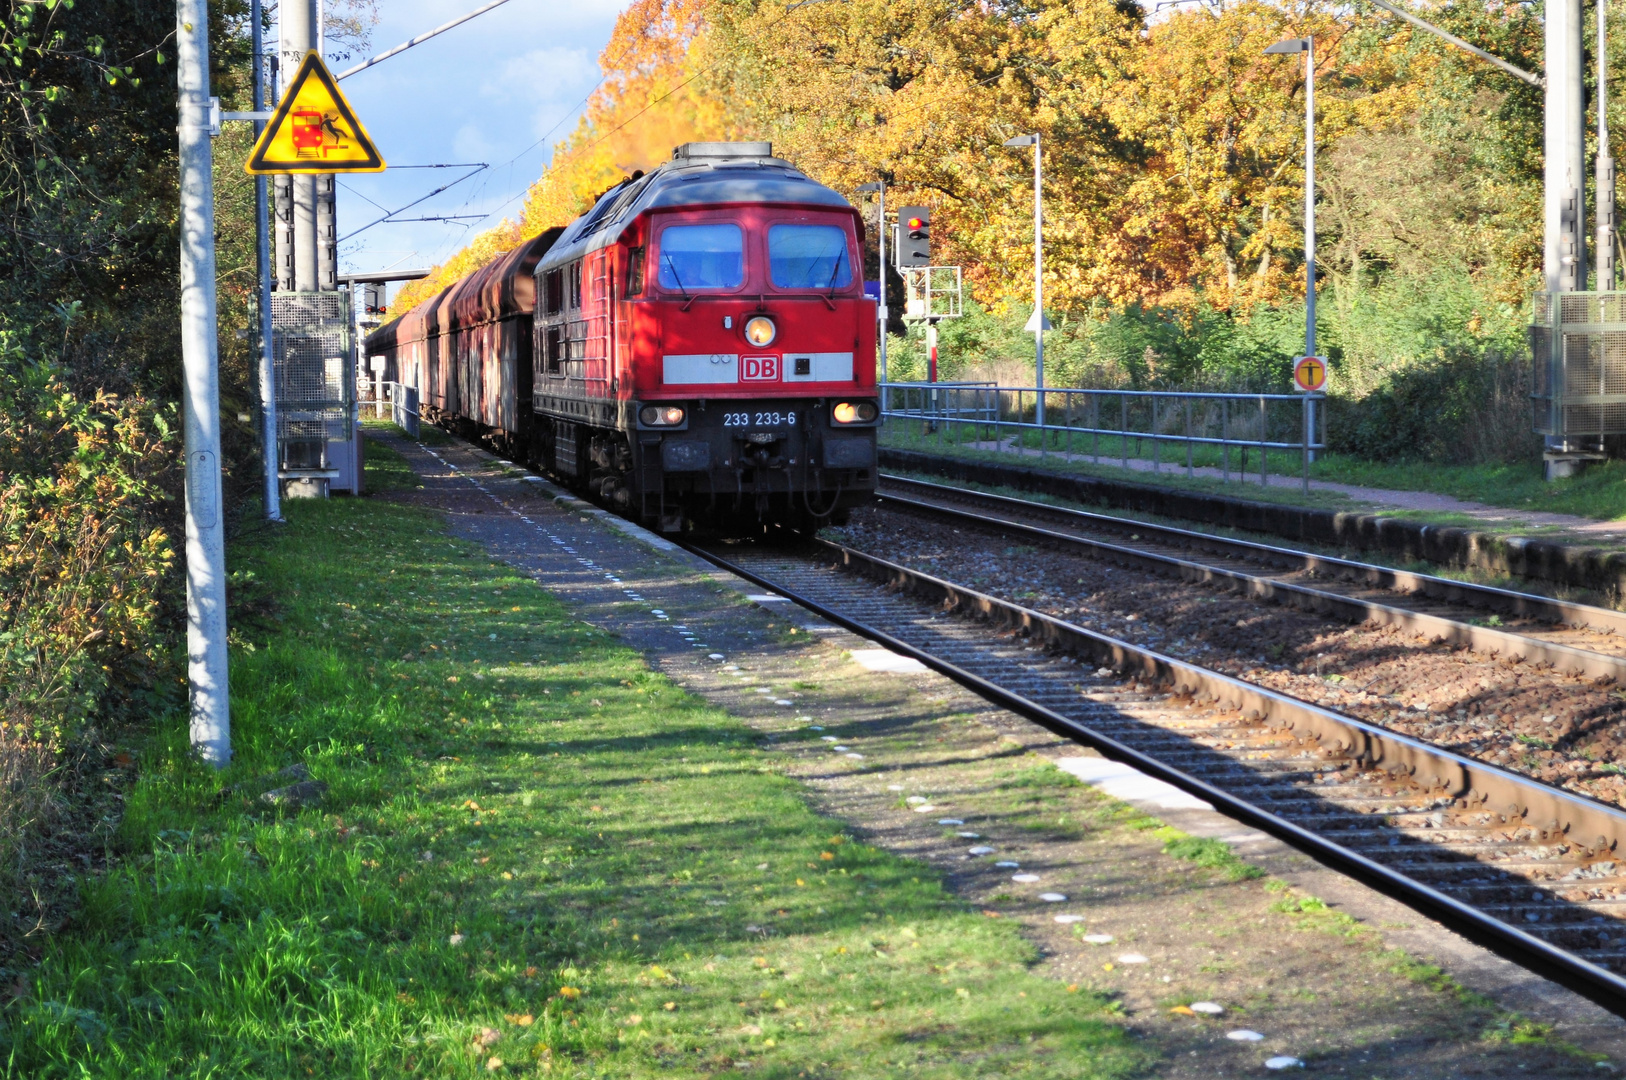 Diesellok Baureihe 233 233-6 in Richtung Bitterfeld mit Güterzug am Haken